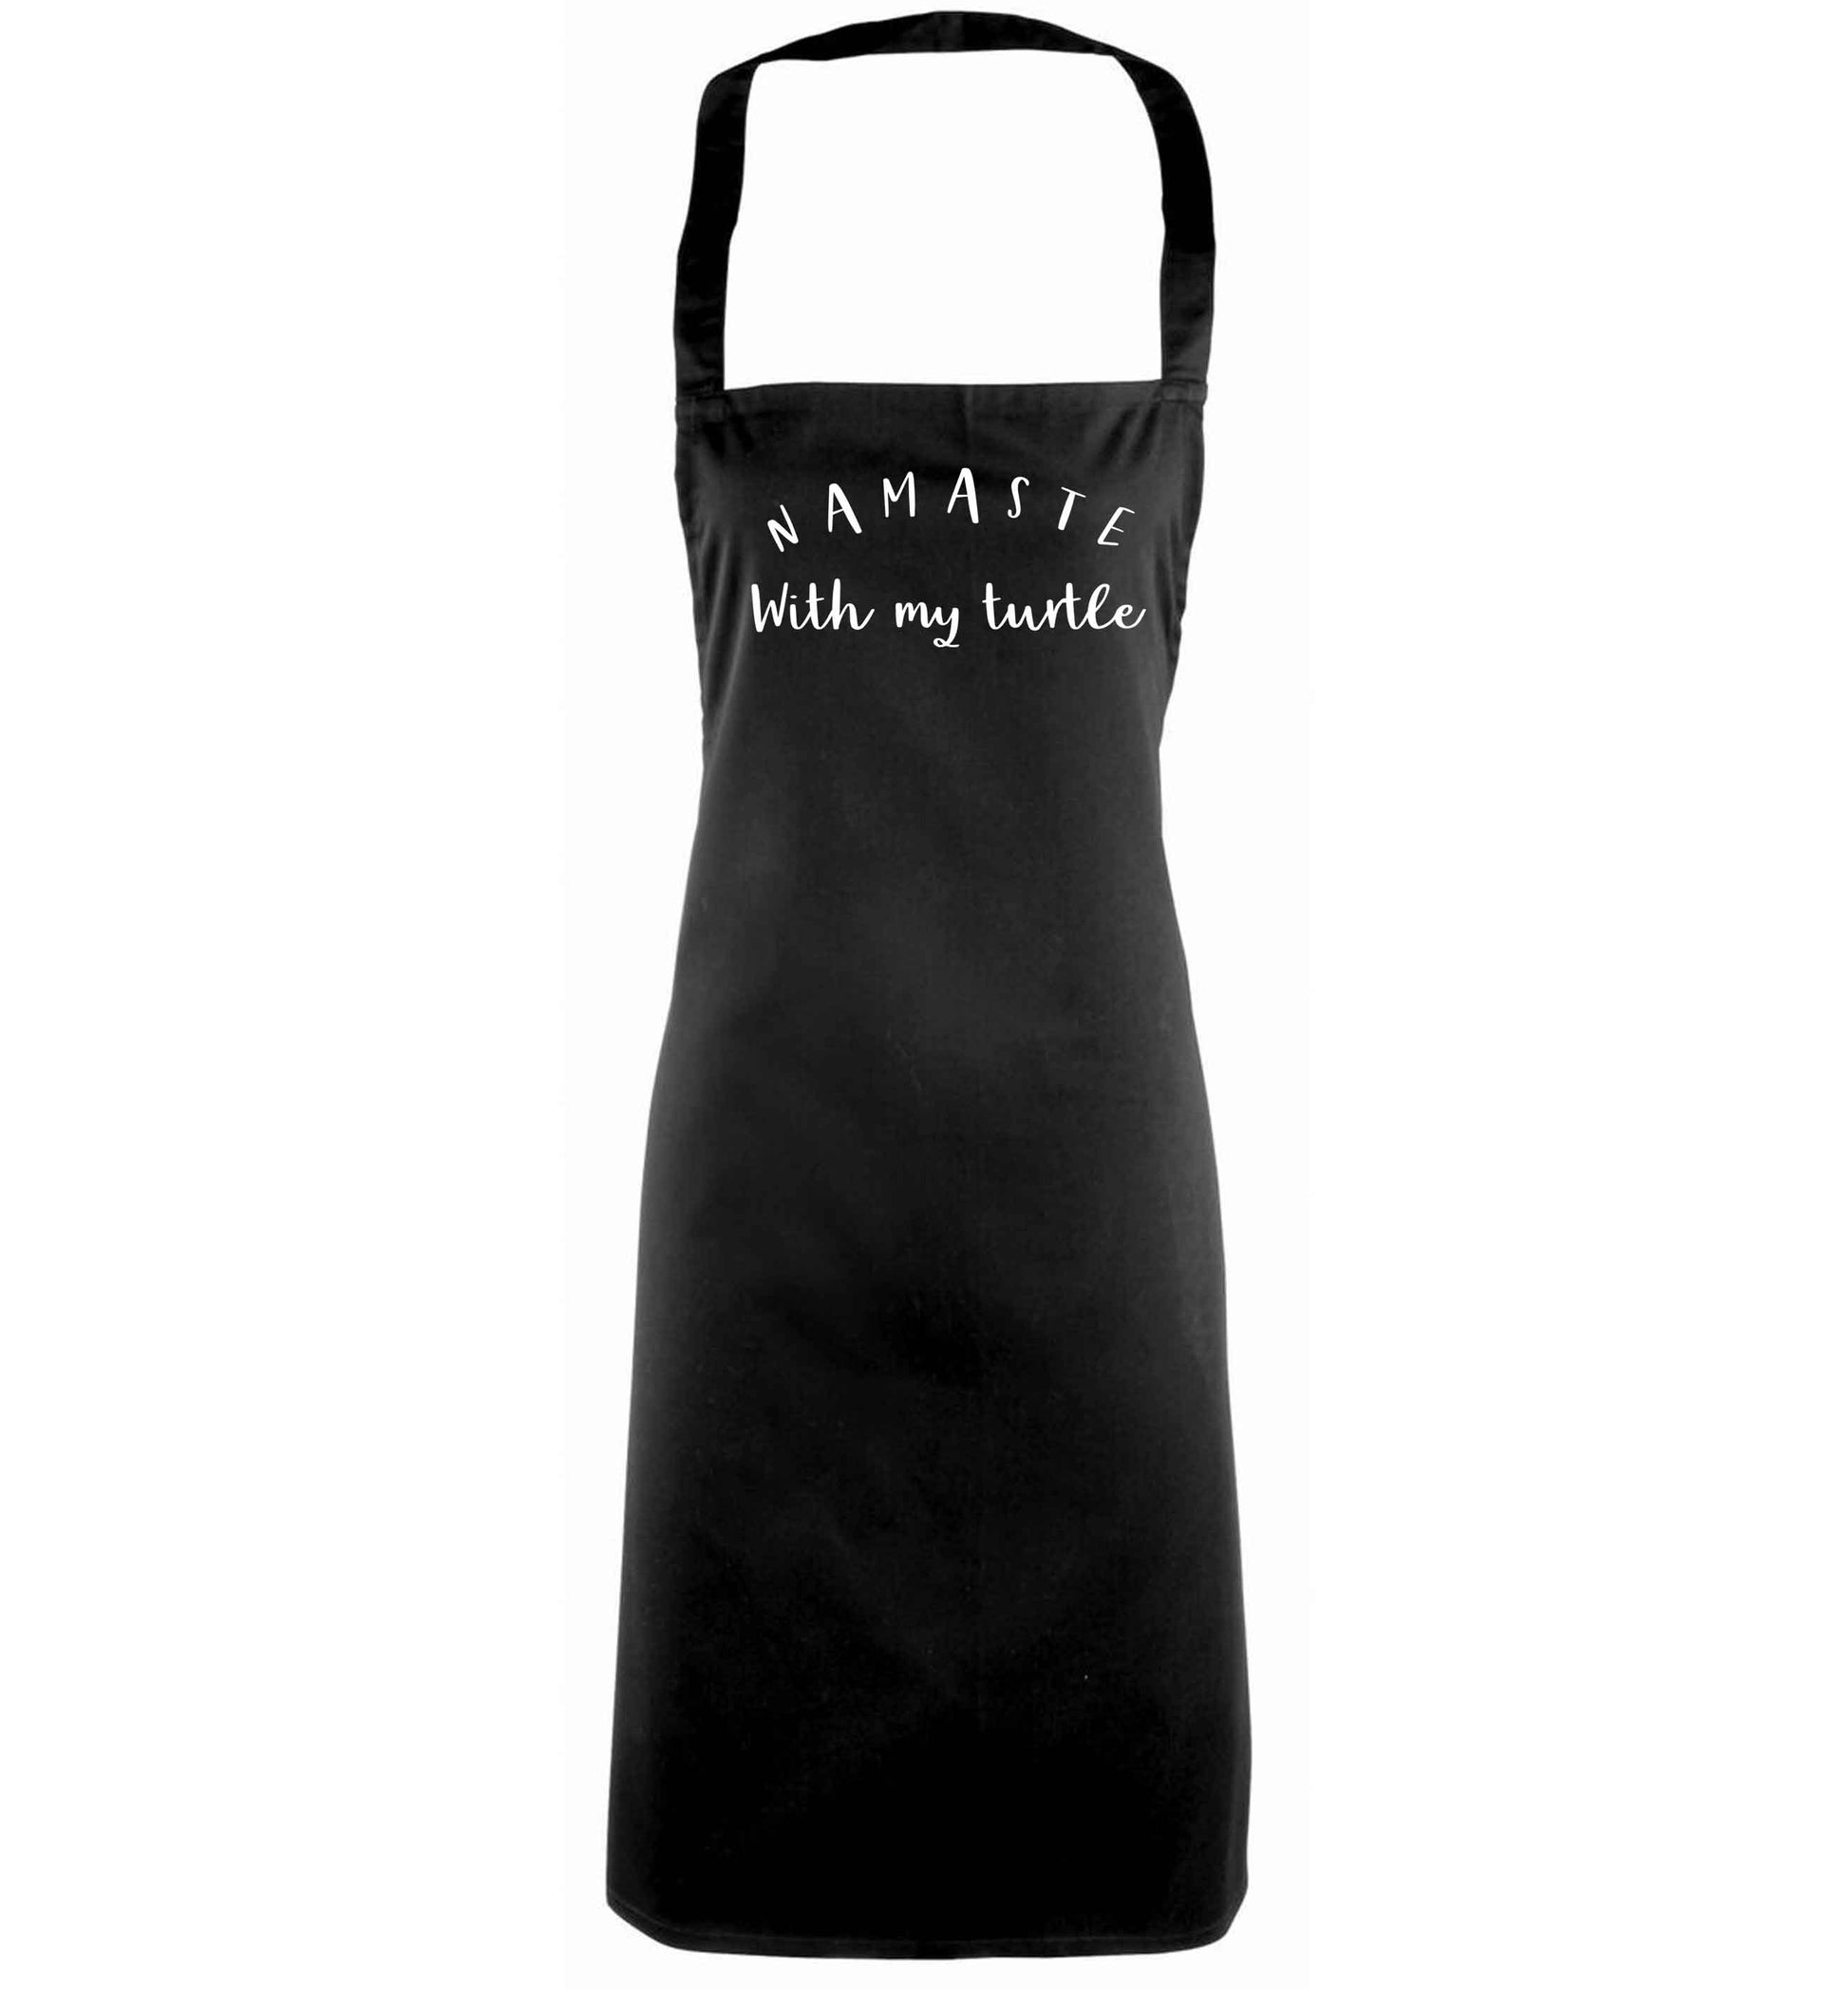 Namaste with my turtle black apron